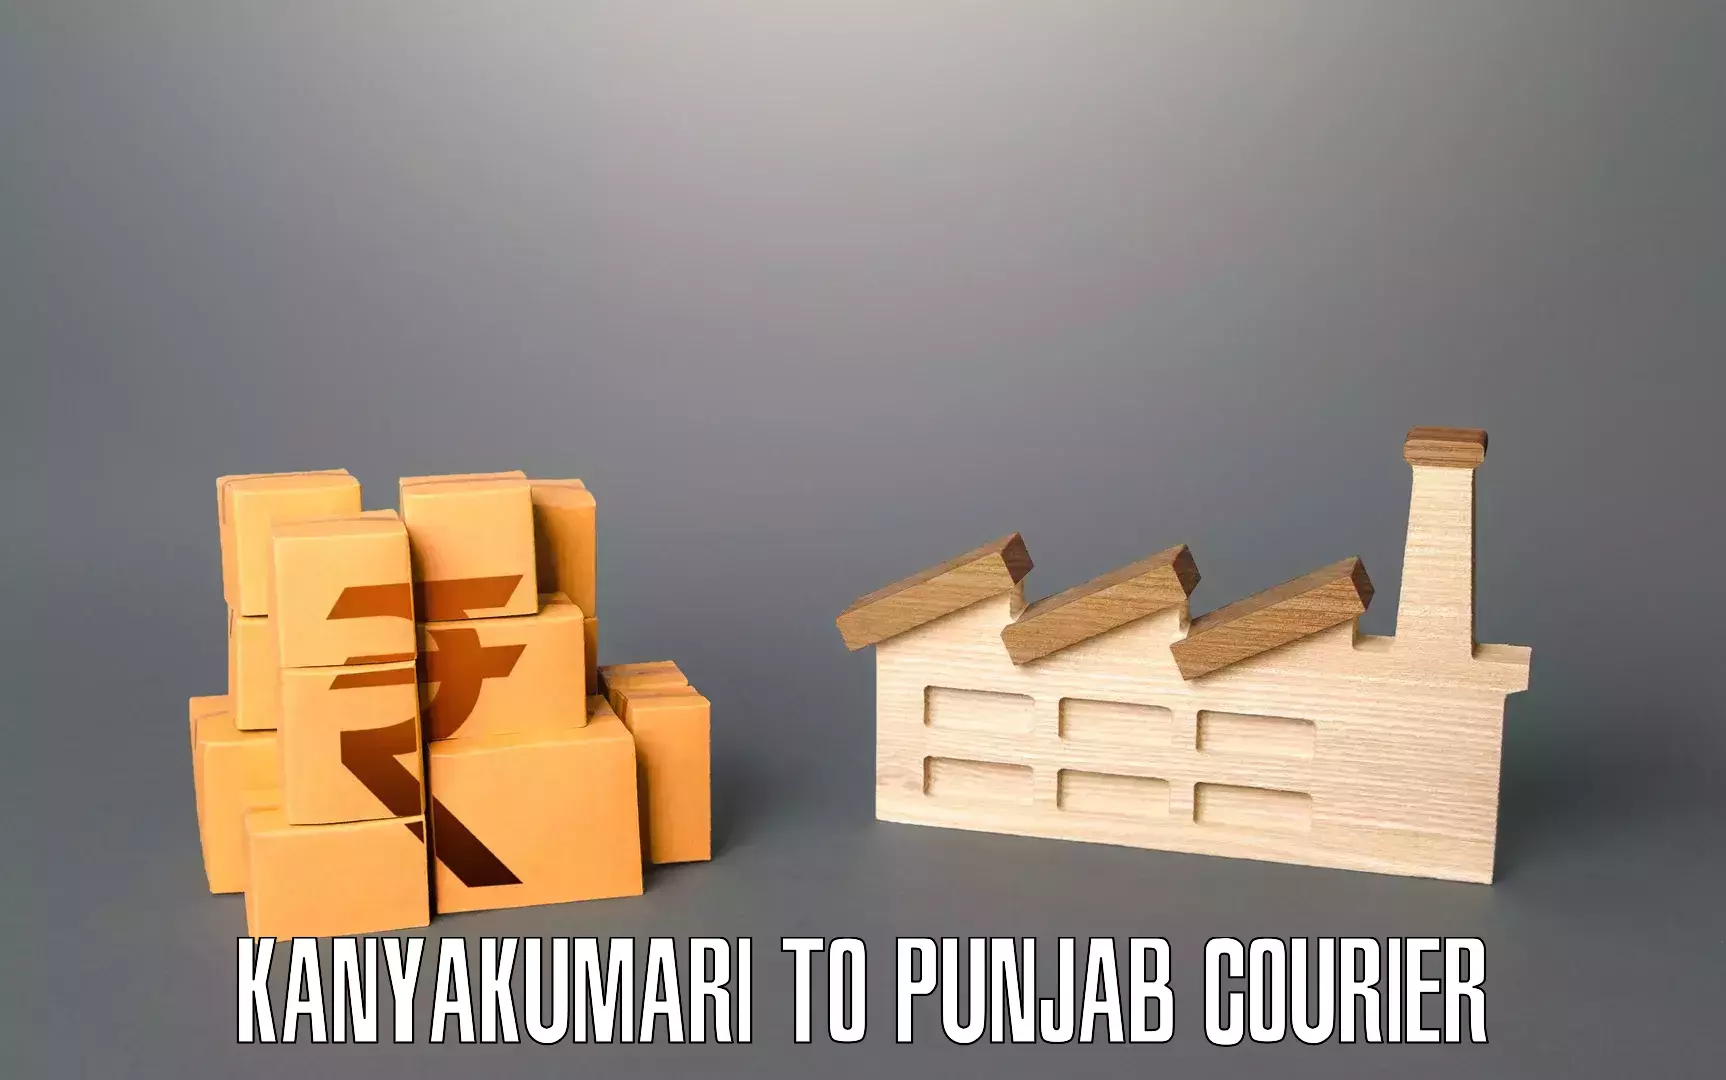 Skilled furniture transporters Kanyakumari to Punjab